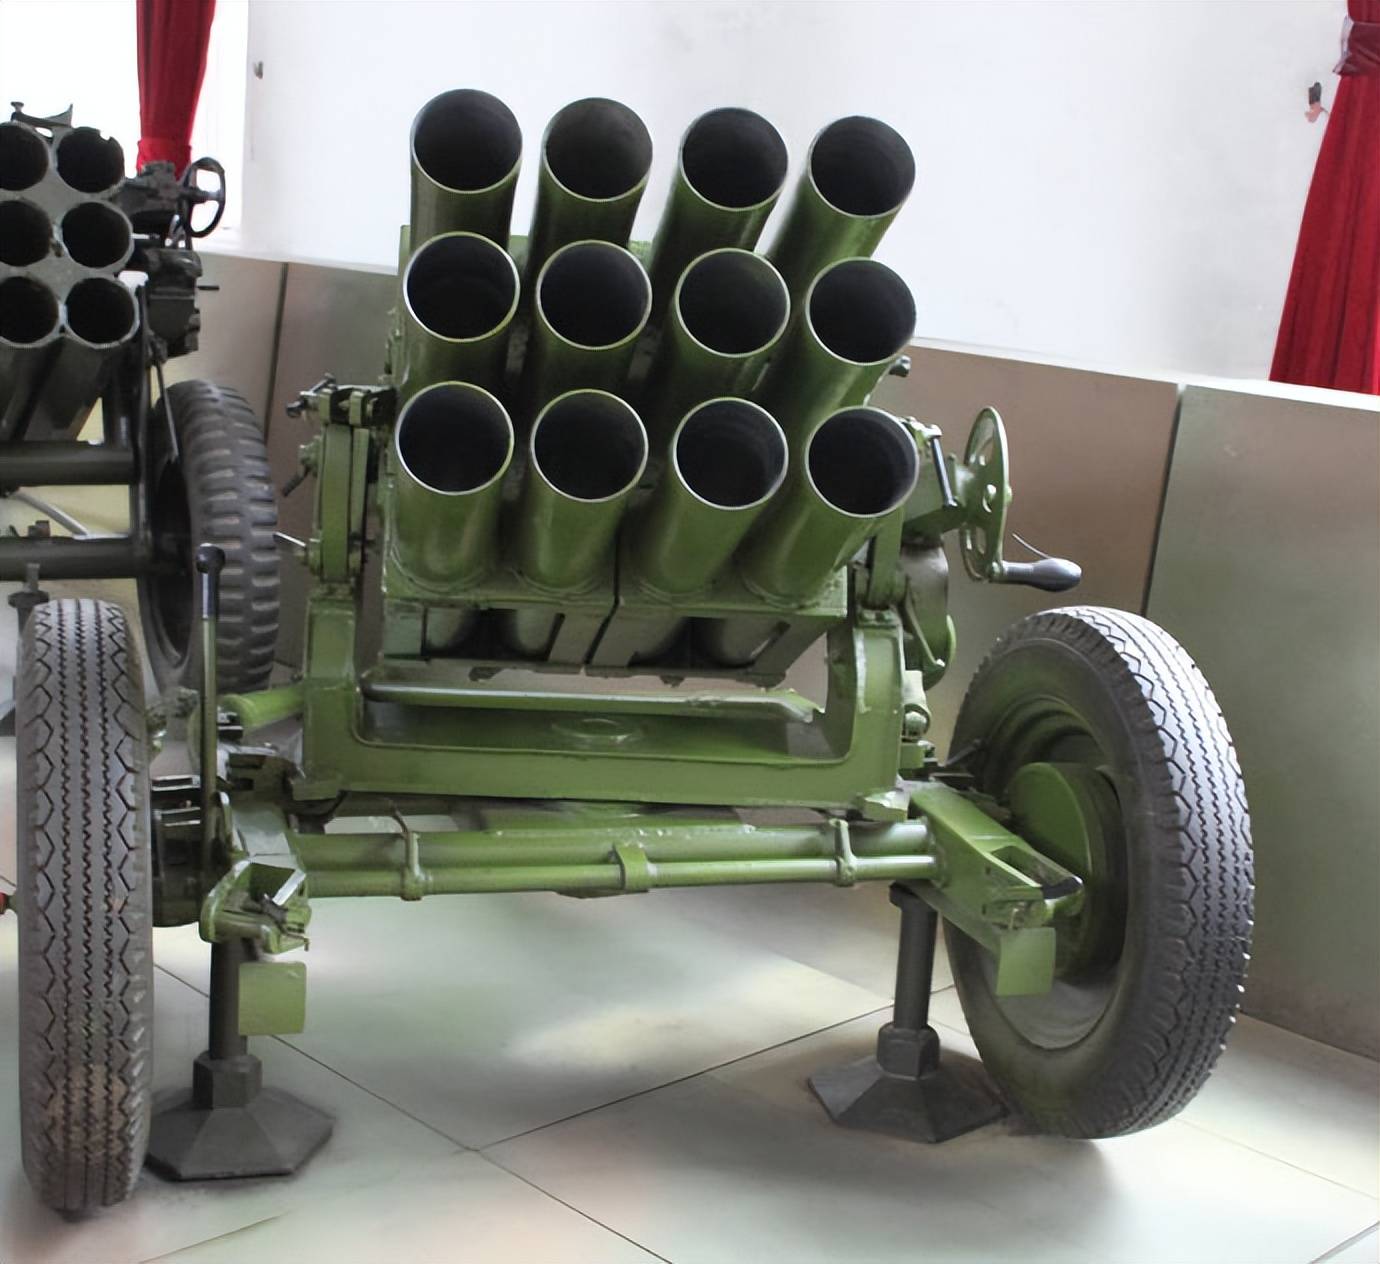 200门63式107火箭炮,这就是我们国家出口的大名鼎鼎的游击神器,该炮有